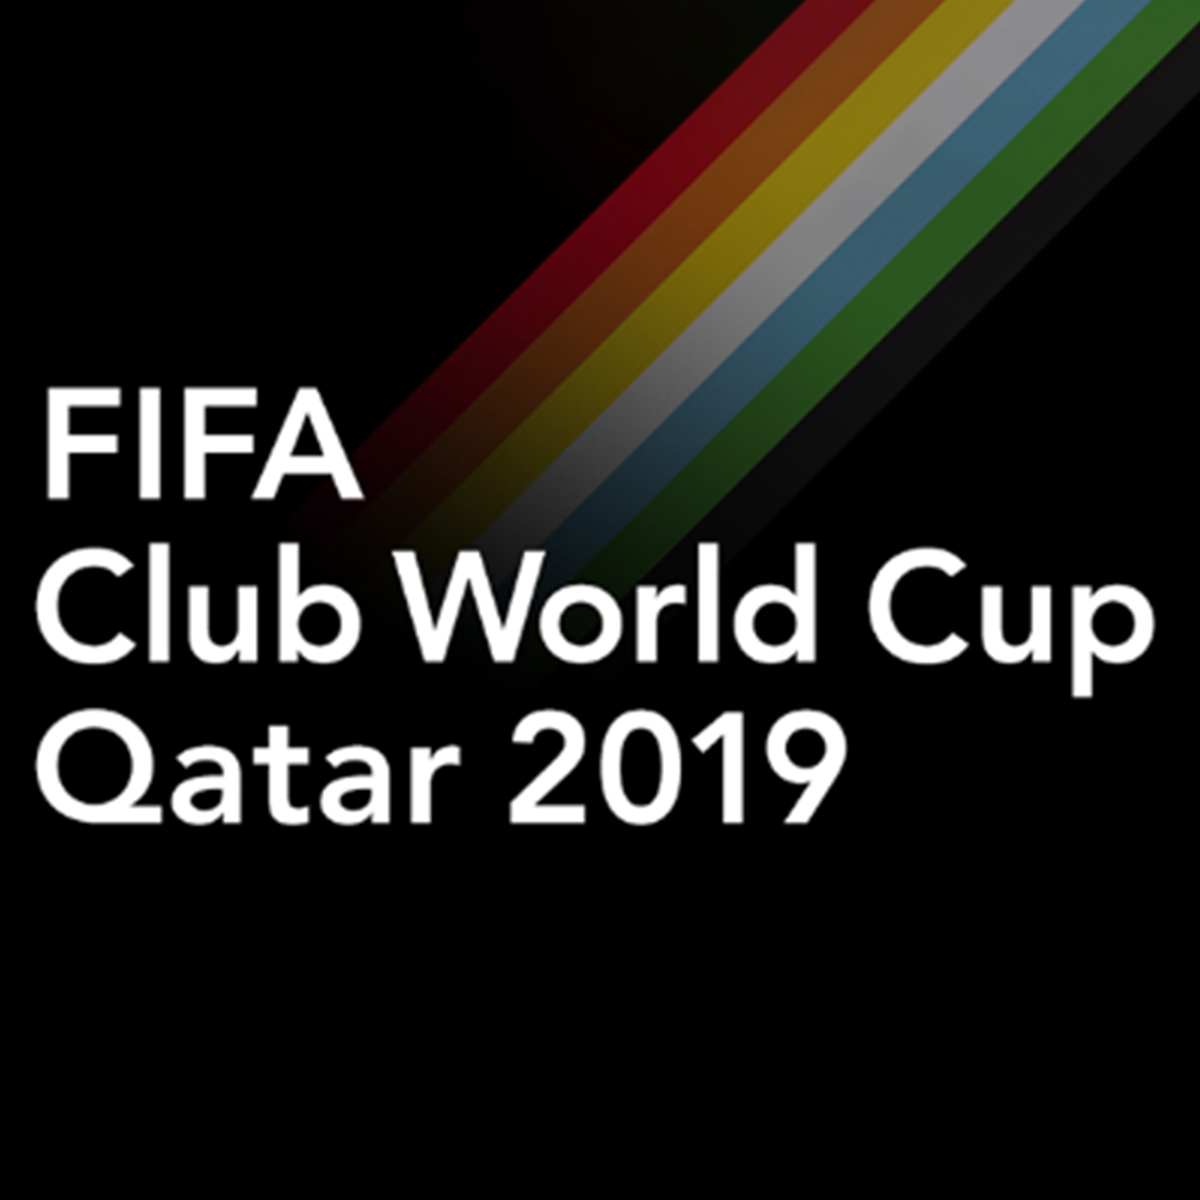 世界一のクラブを決める Fifaクラブワールドカップ19 が本日開幕 バランスタイムズ サッカーのあるファッションライフ